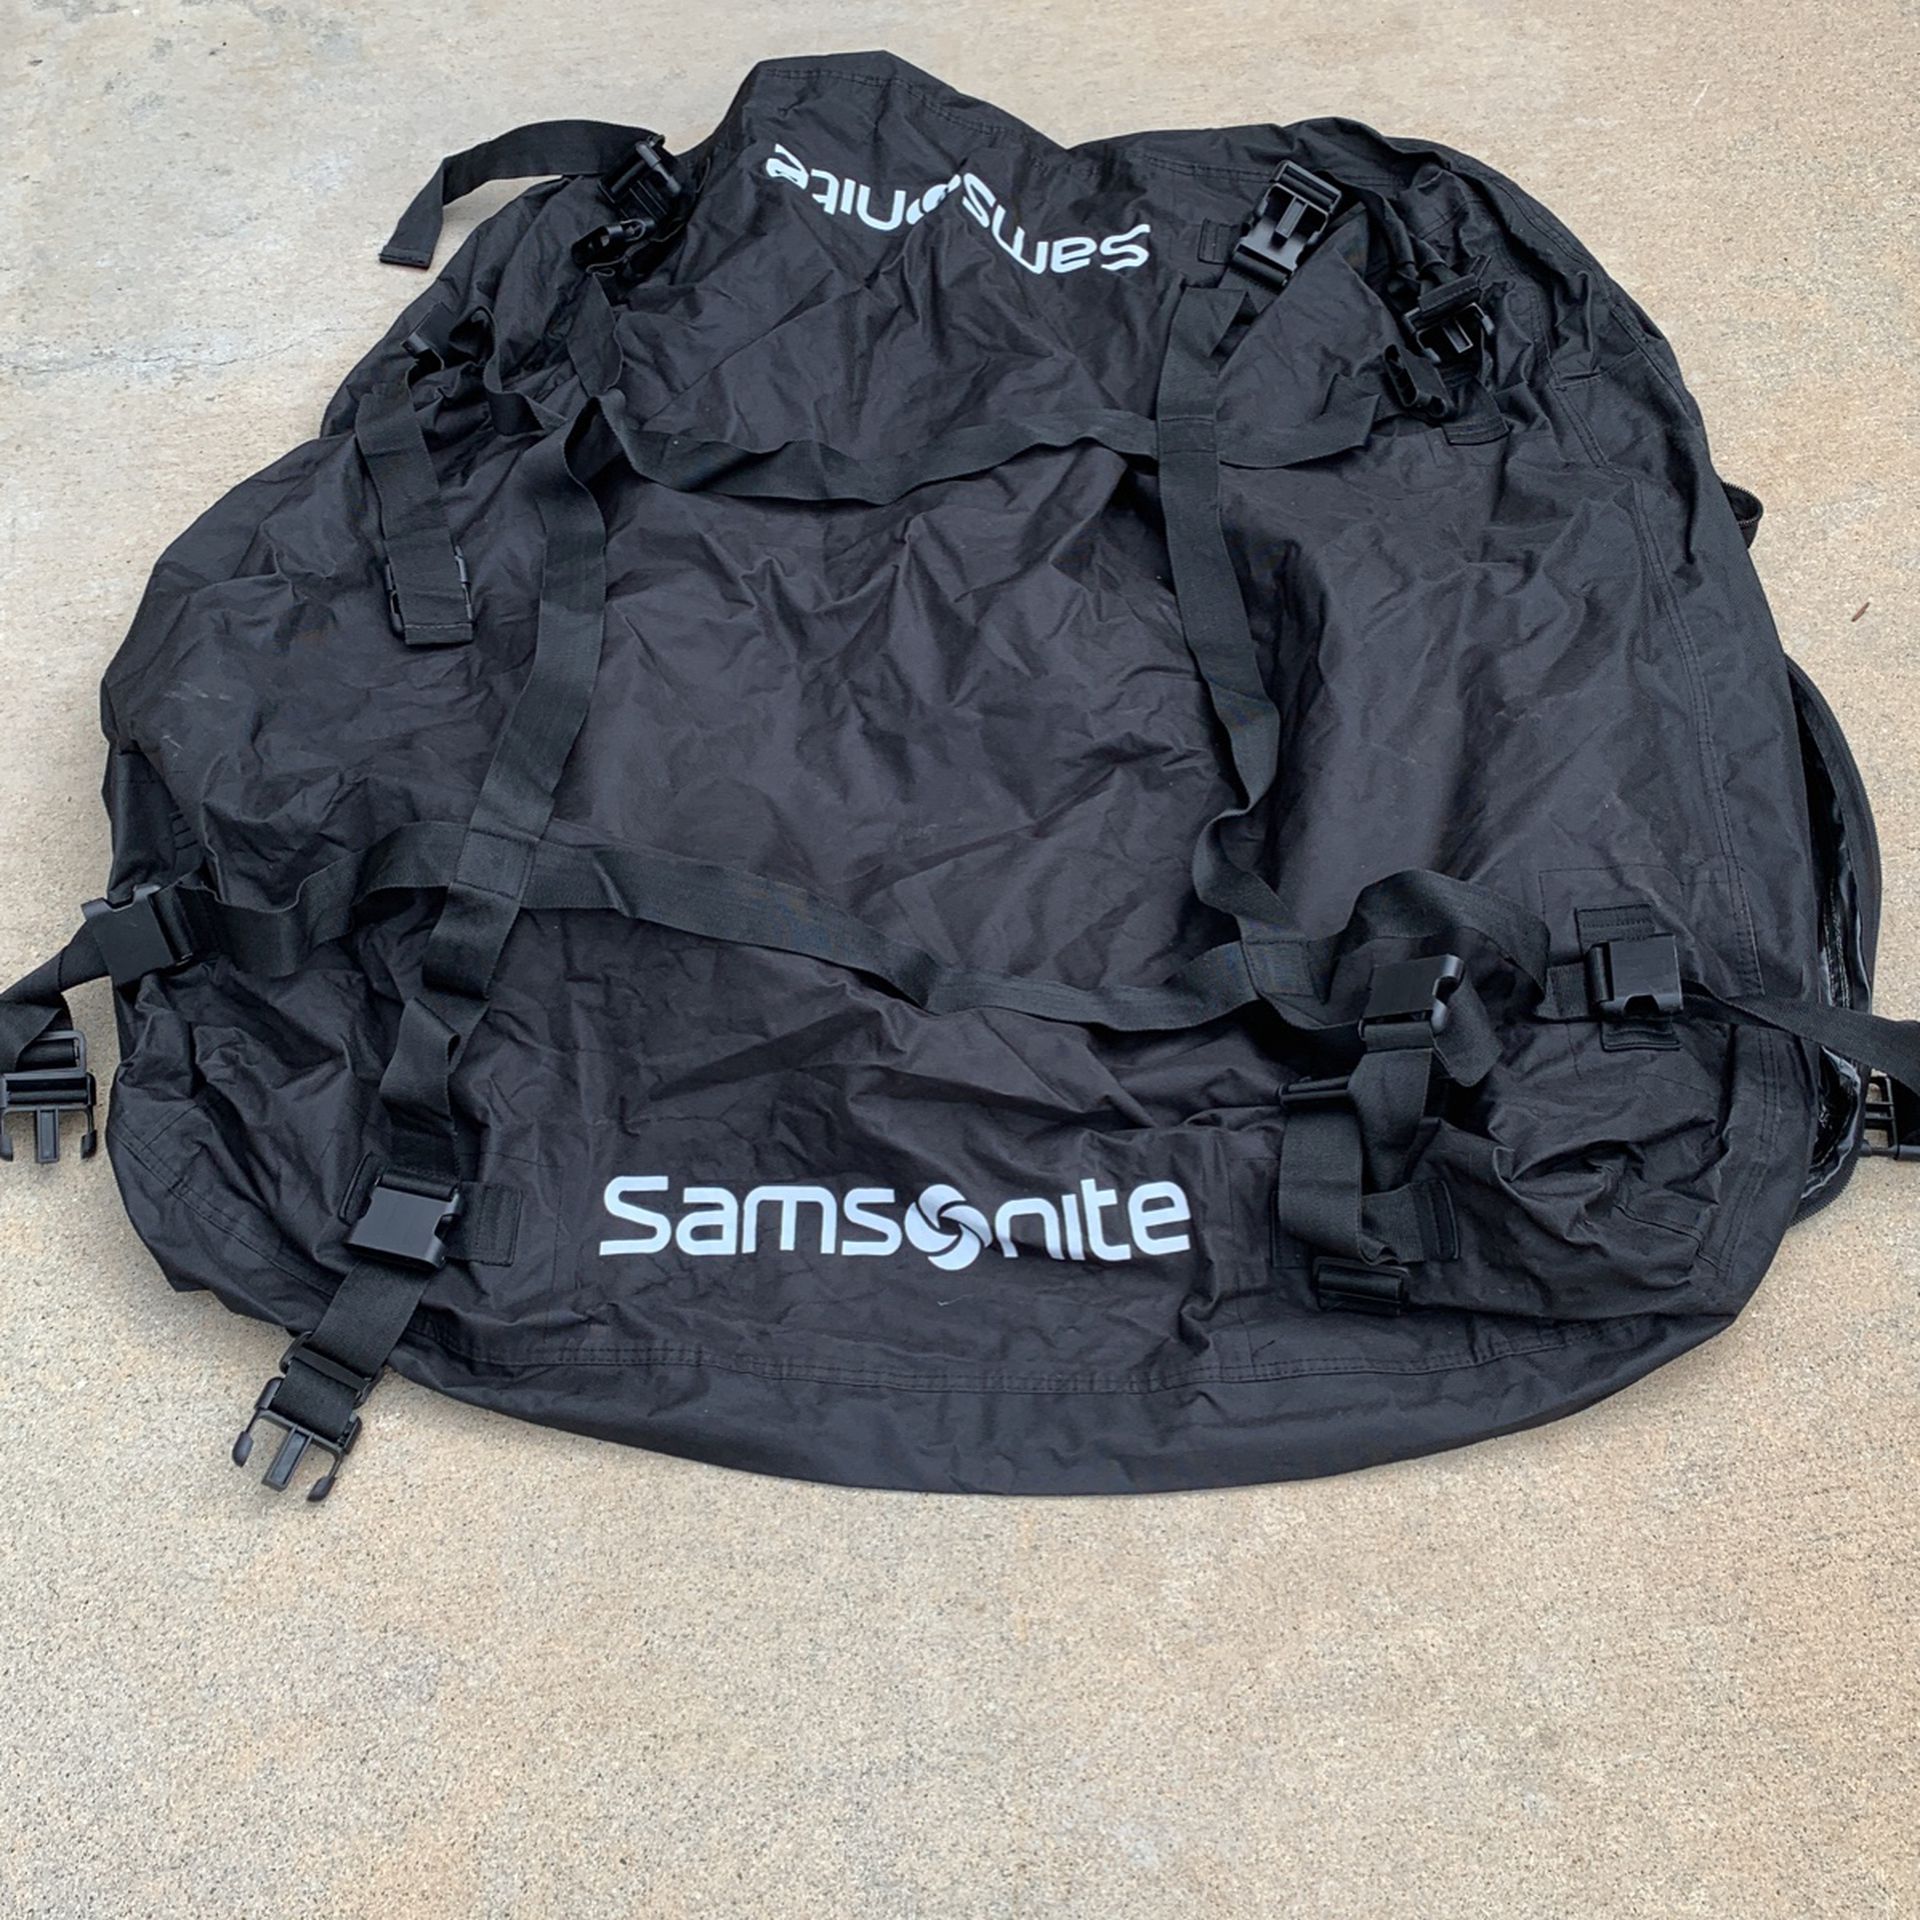 Samsonite travel roof bag